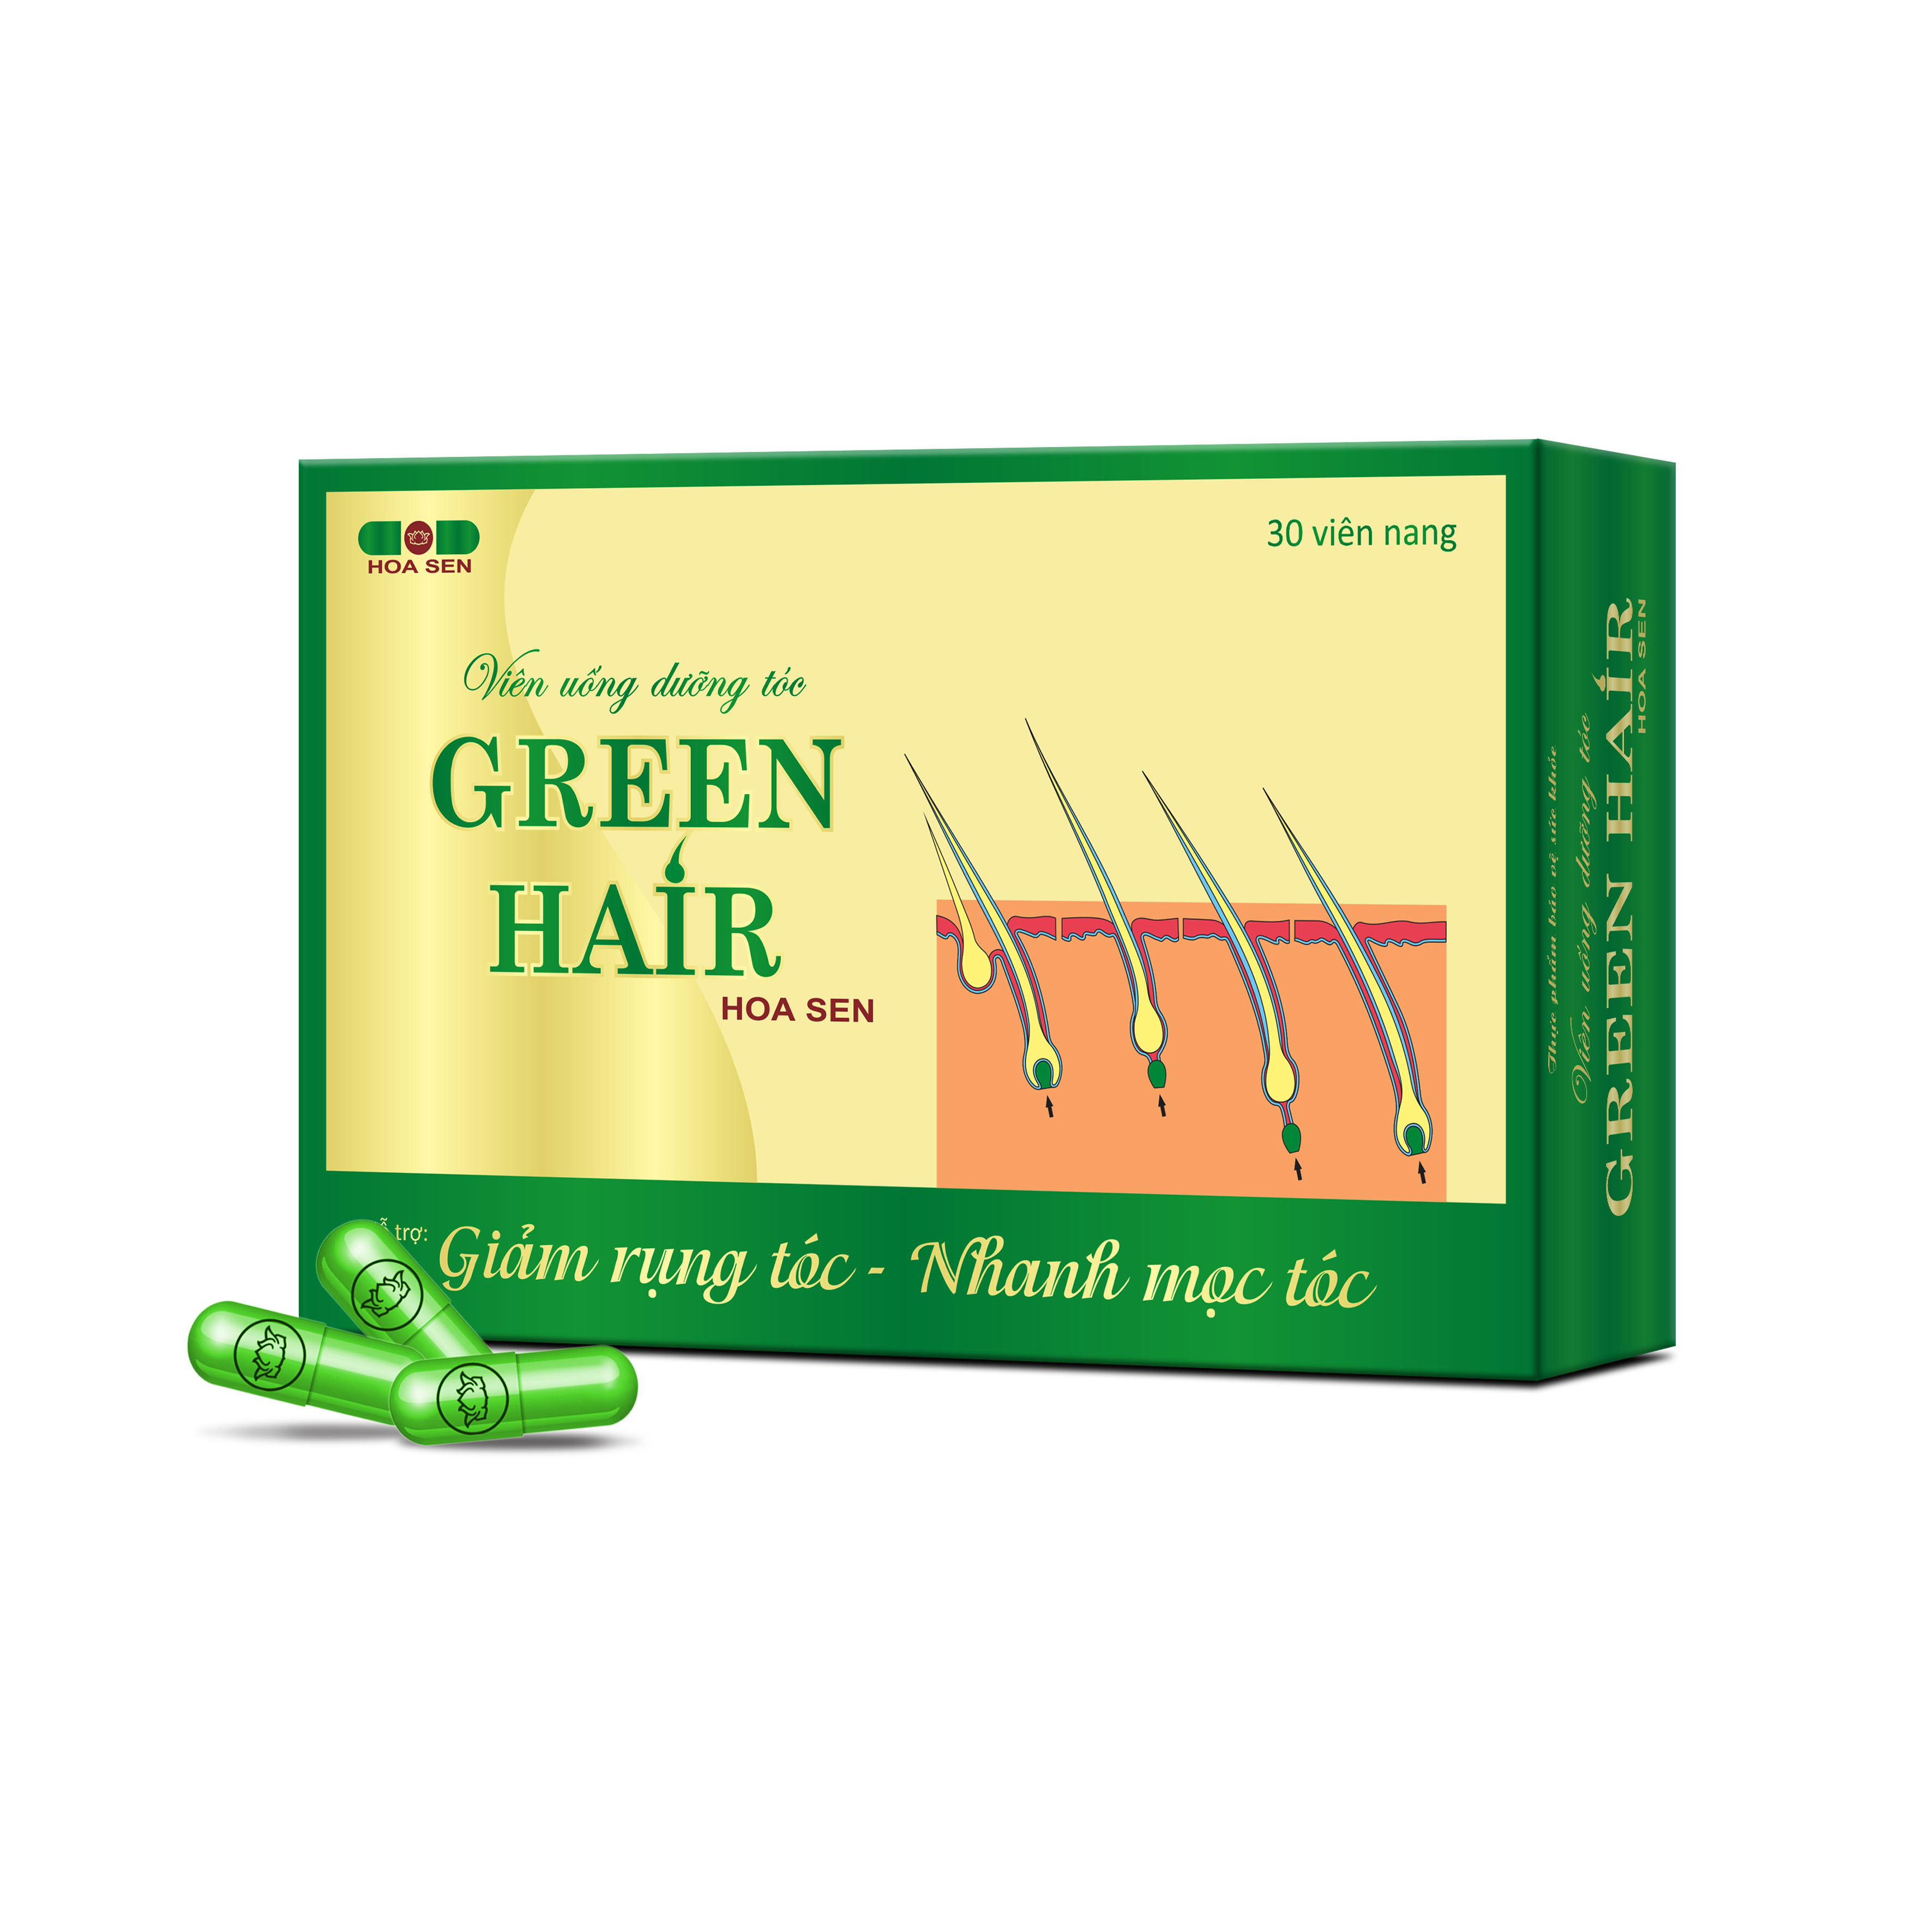 Viên uống dưỡng tóc Green Hair - Dạng vỉ (Hàng chính hãng)